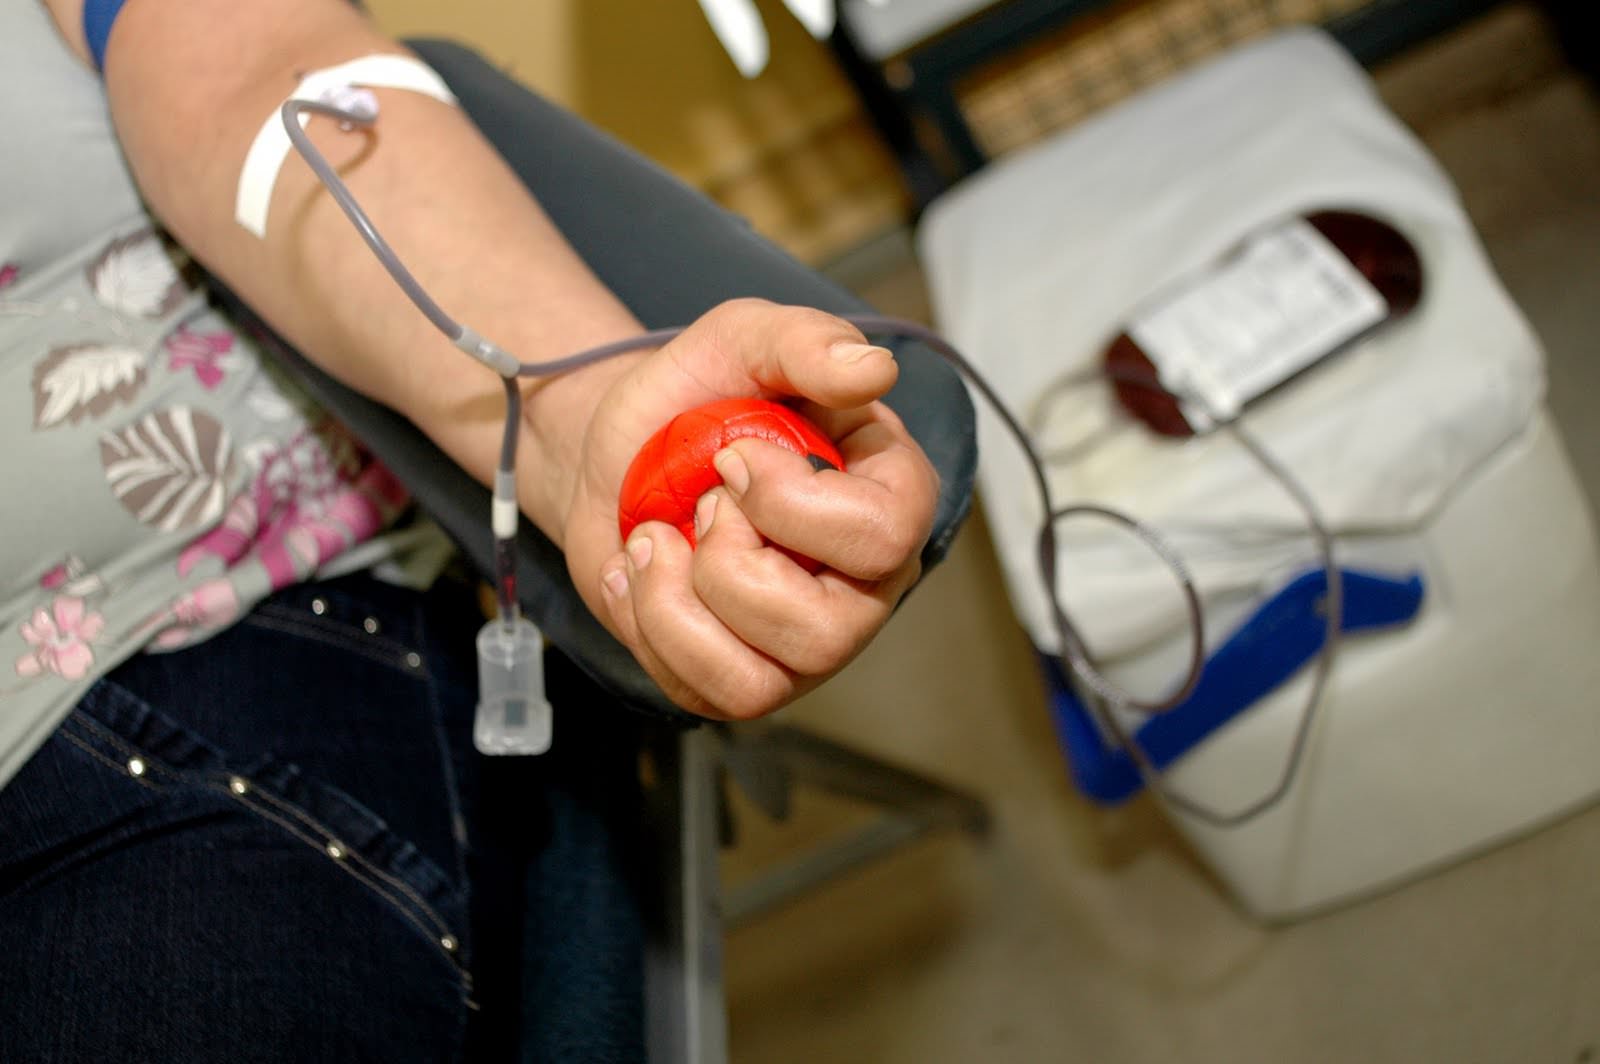 Hemoam convoca doadores de sangue O negativo